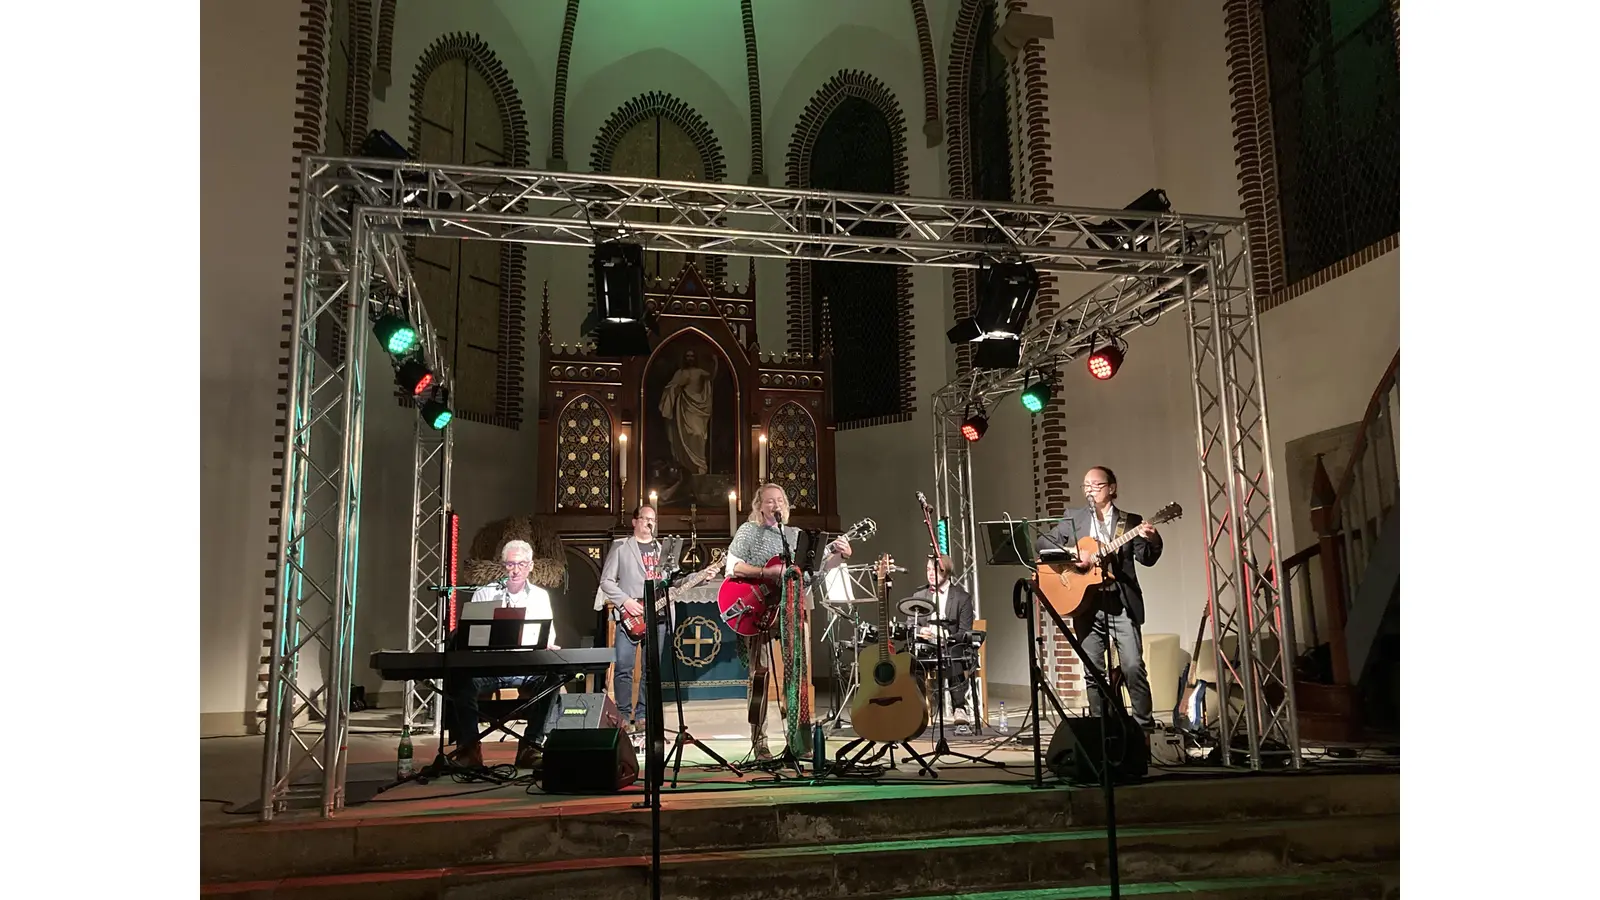 Am Sonntag findet in der Christuskirche Bad Eilsen ein Spenden-Konzert statt. (Foto: privat)